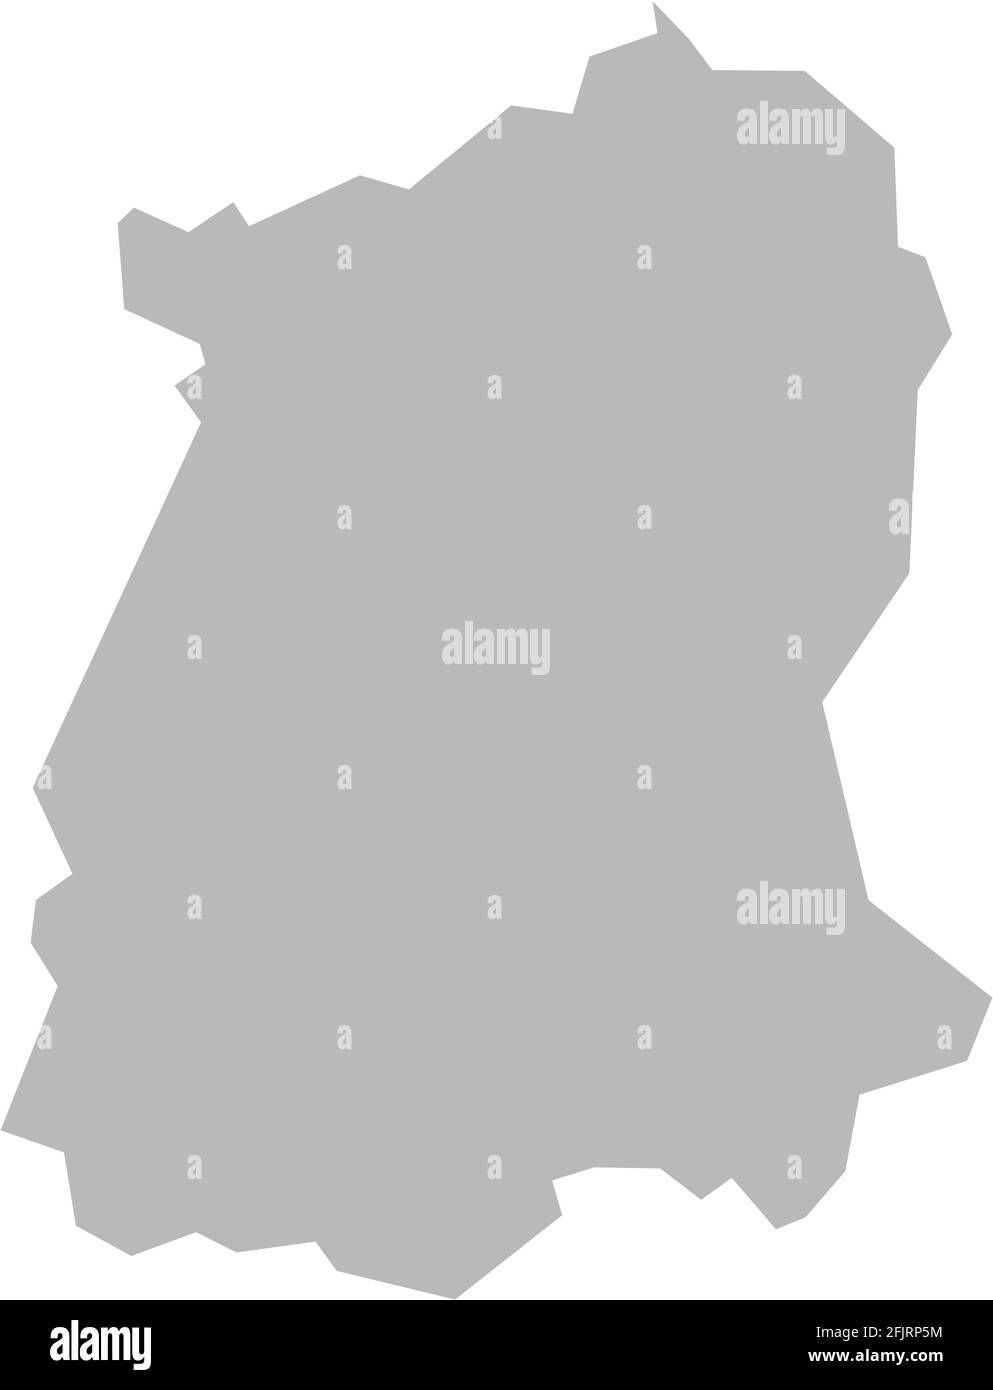 Mappa dello stato indiano di Sikkim. Sfondo grigio chiaro. Progettazione grafica dei concetti aziendali. Illustrazione Vettoriale